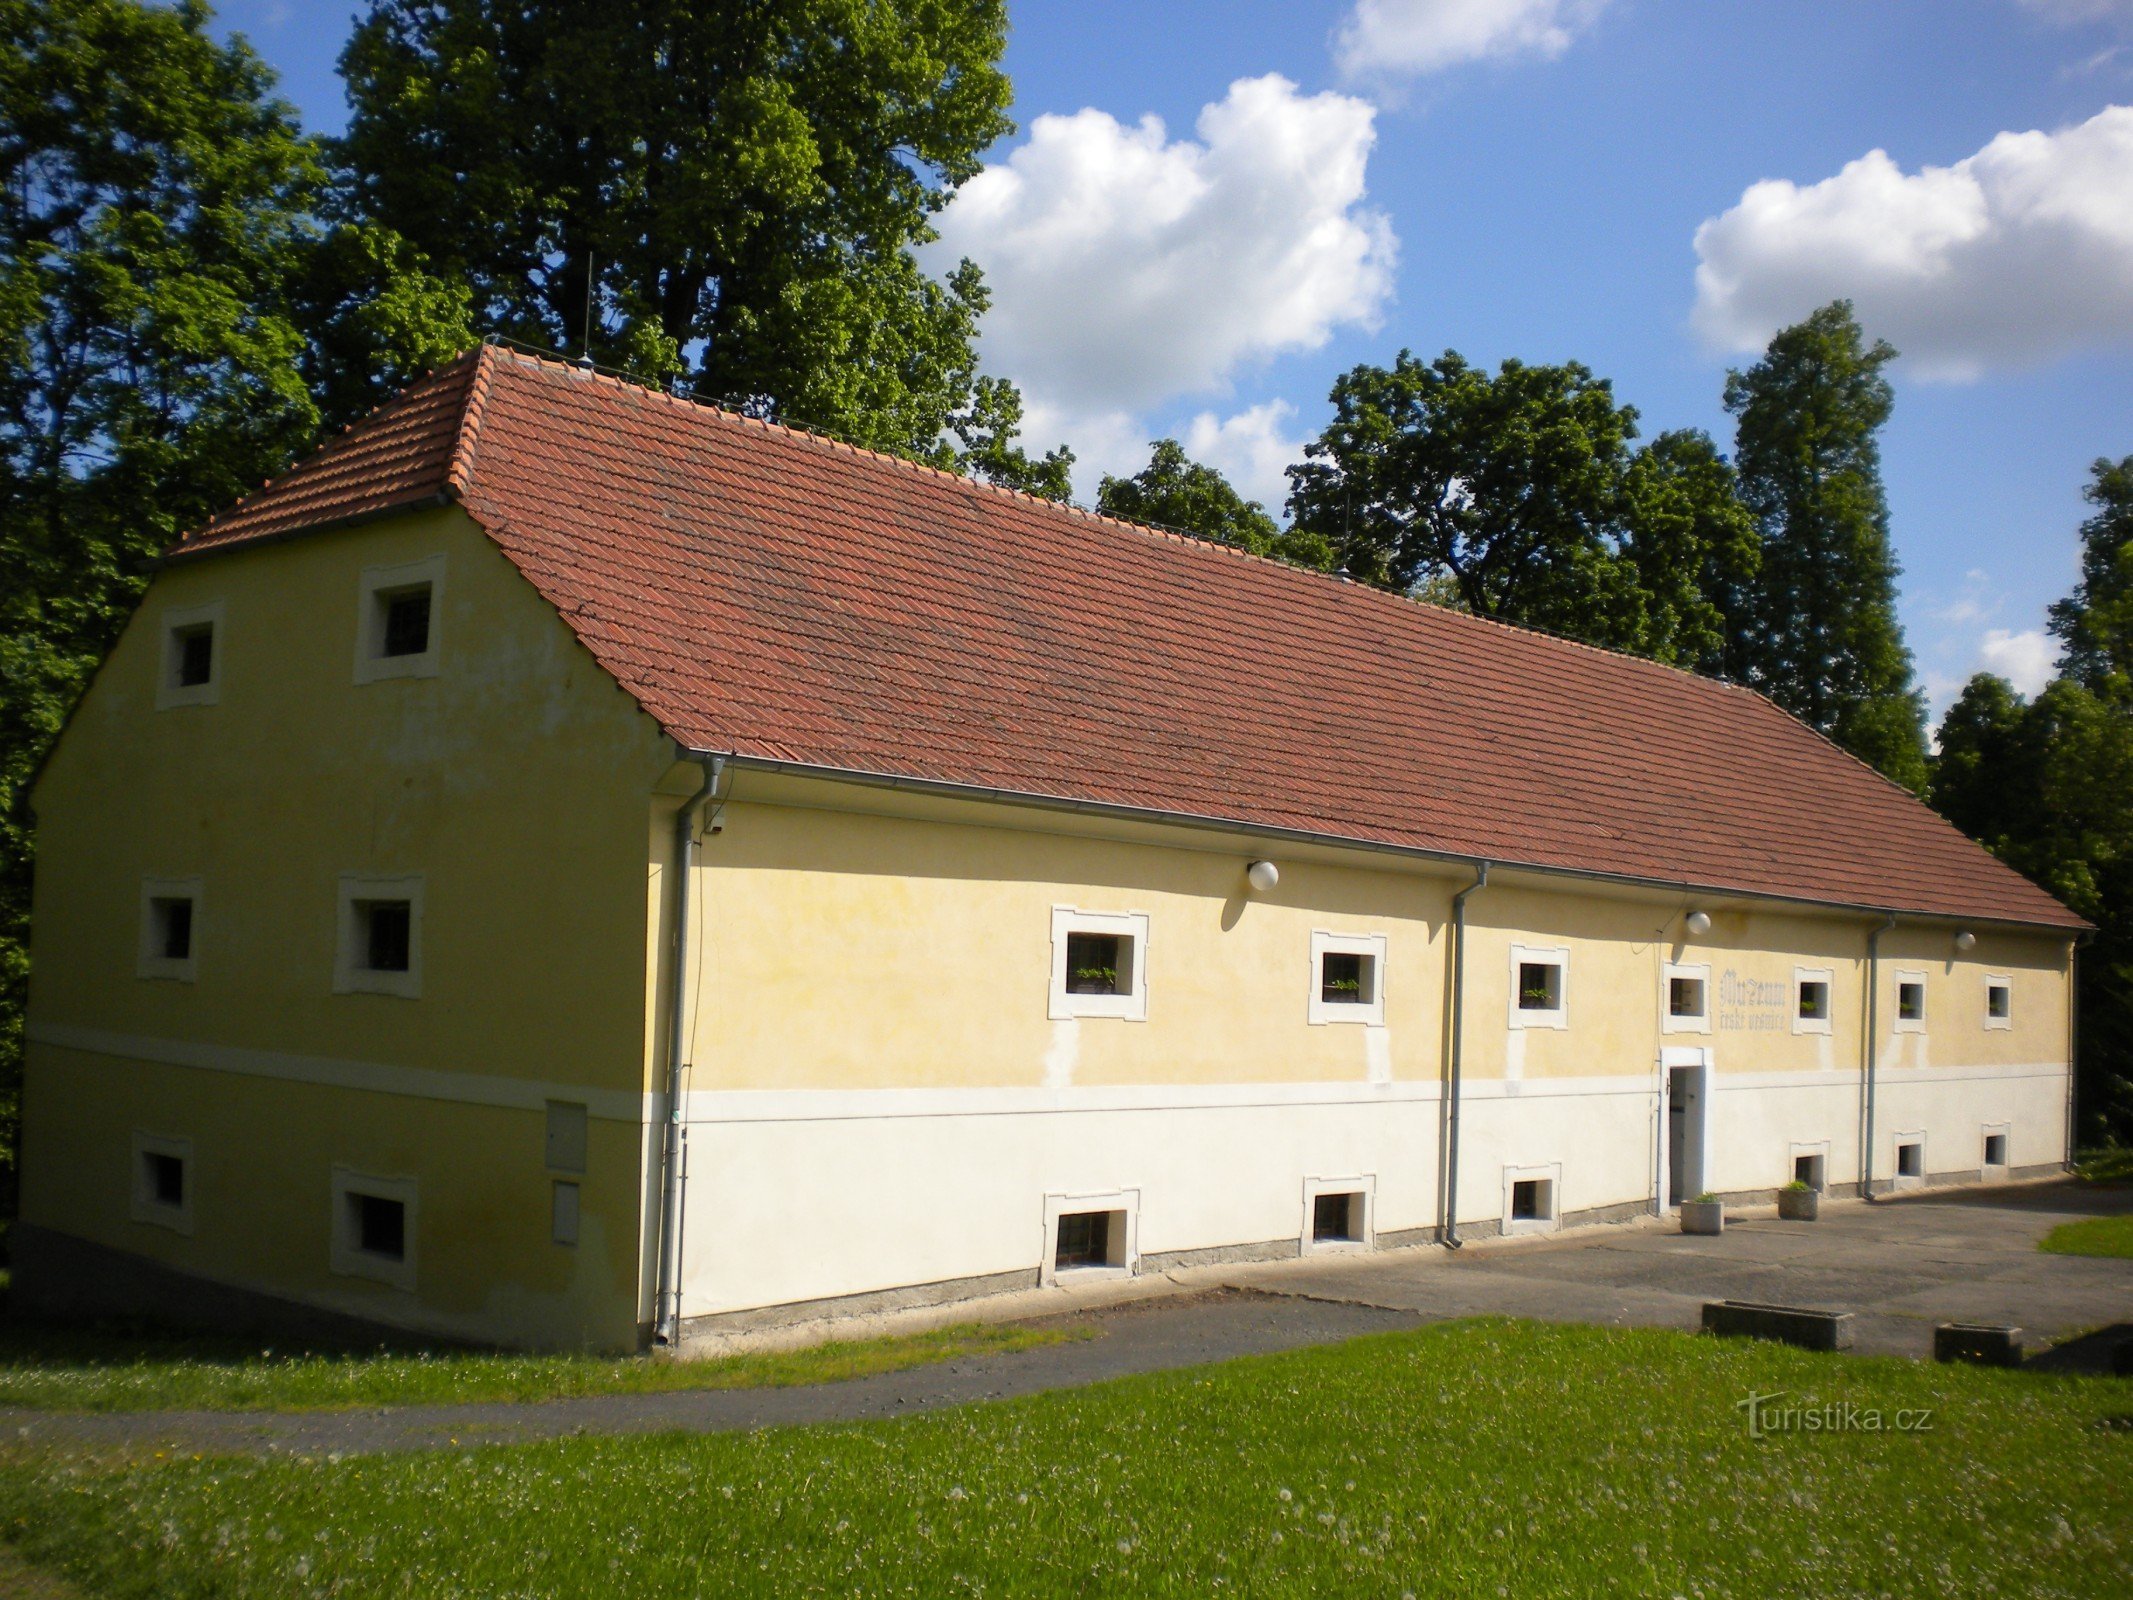 Museu da vila checa